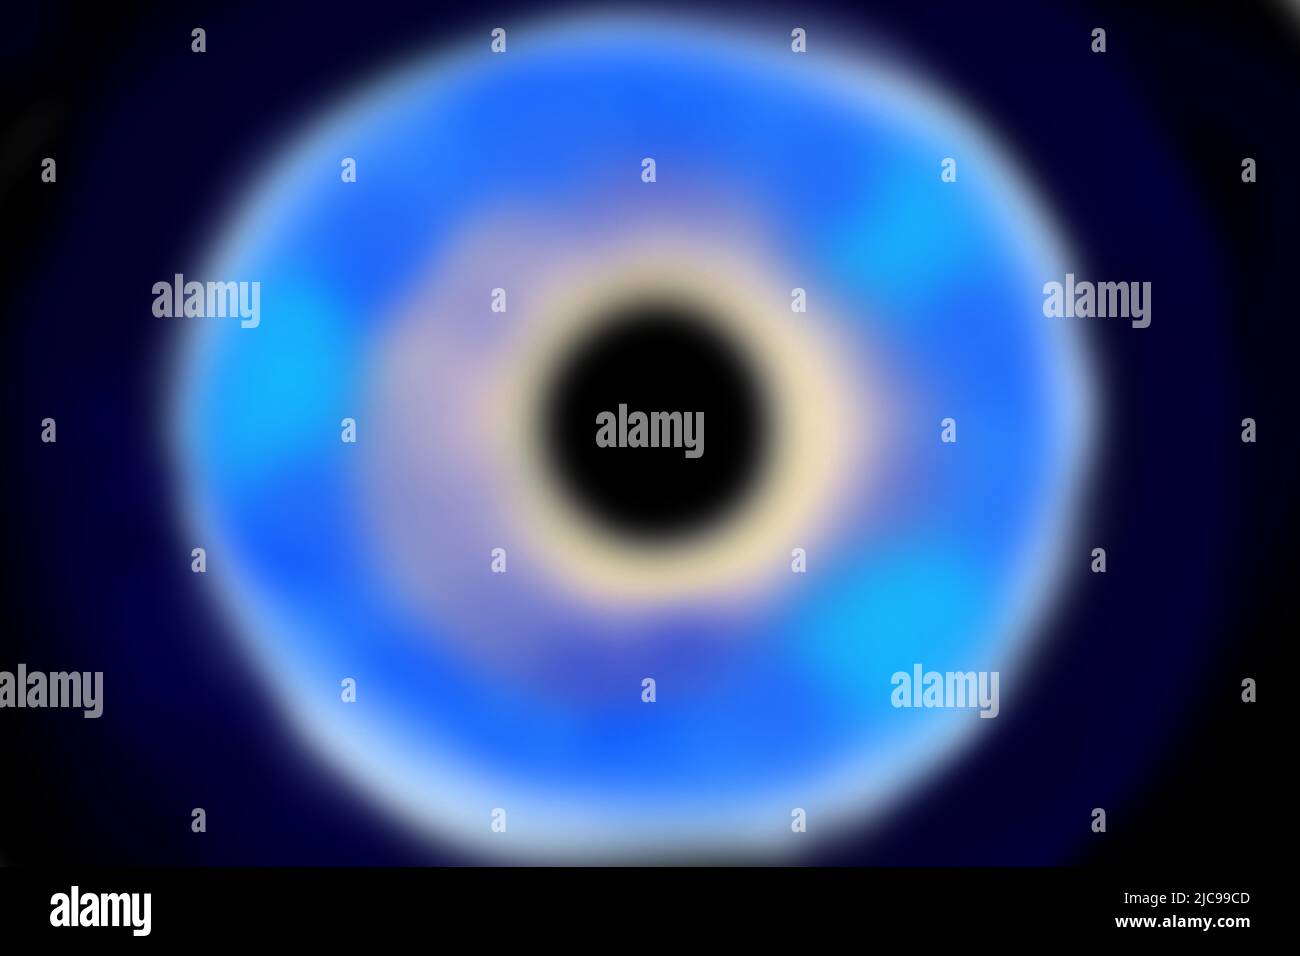 simulazione di un buco nero in uno spazio siderale profondo con toni azzurri e blu e nero assoluto interno con massa infinita Foto Stock